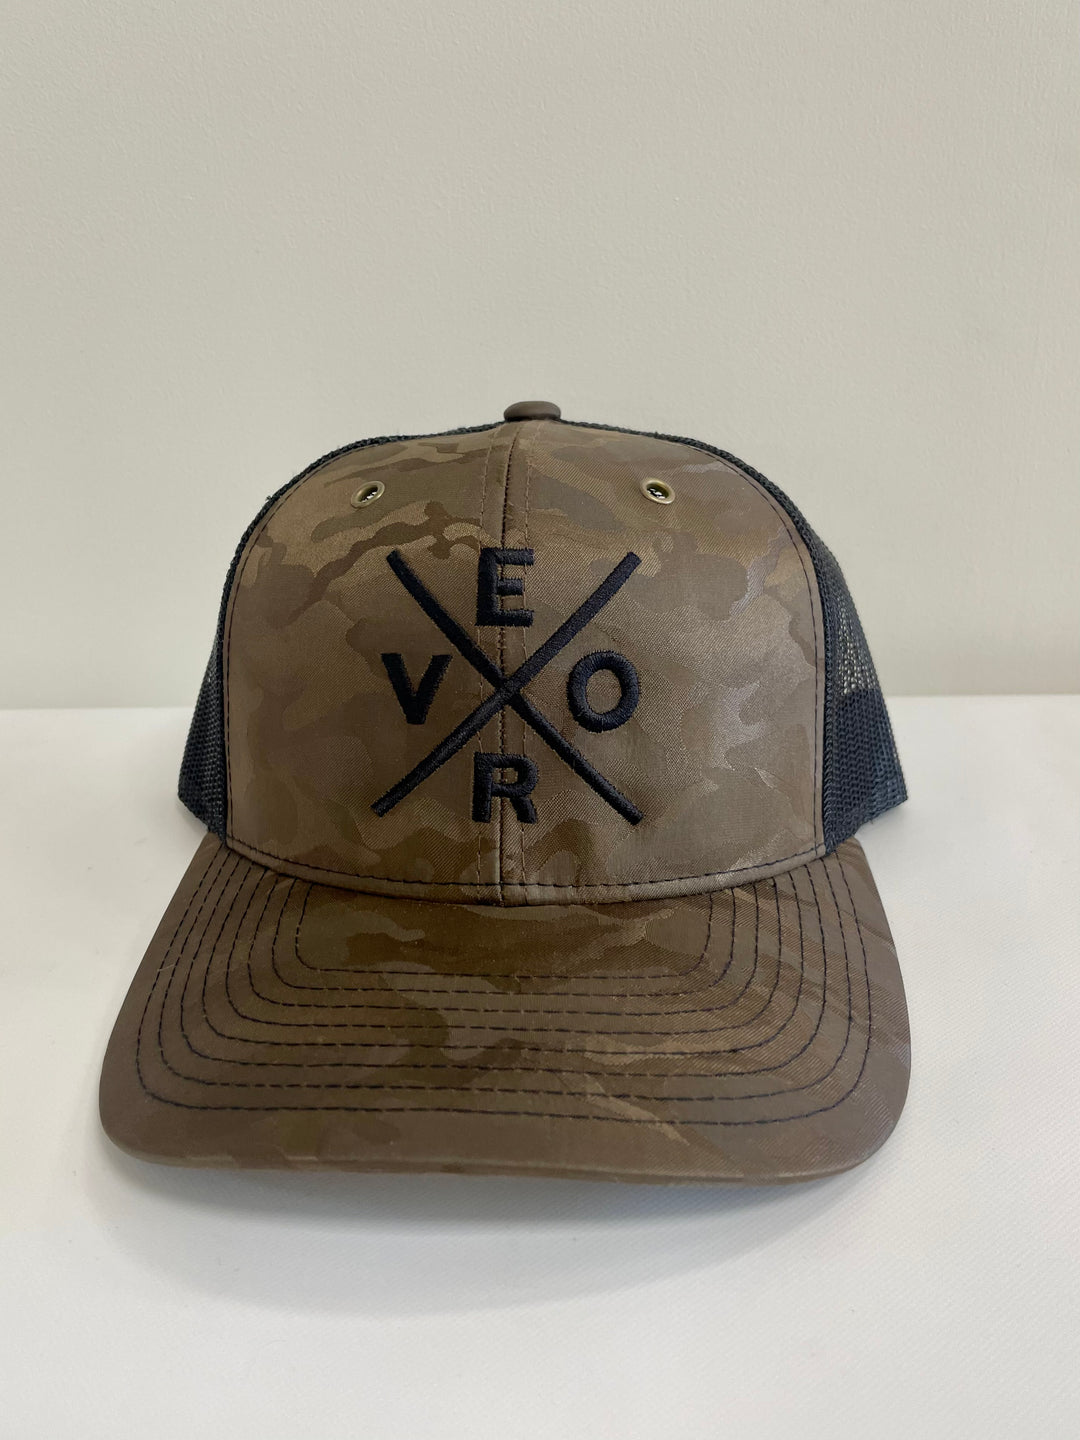 Vero Trucker Hat - Brown Camo